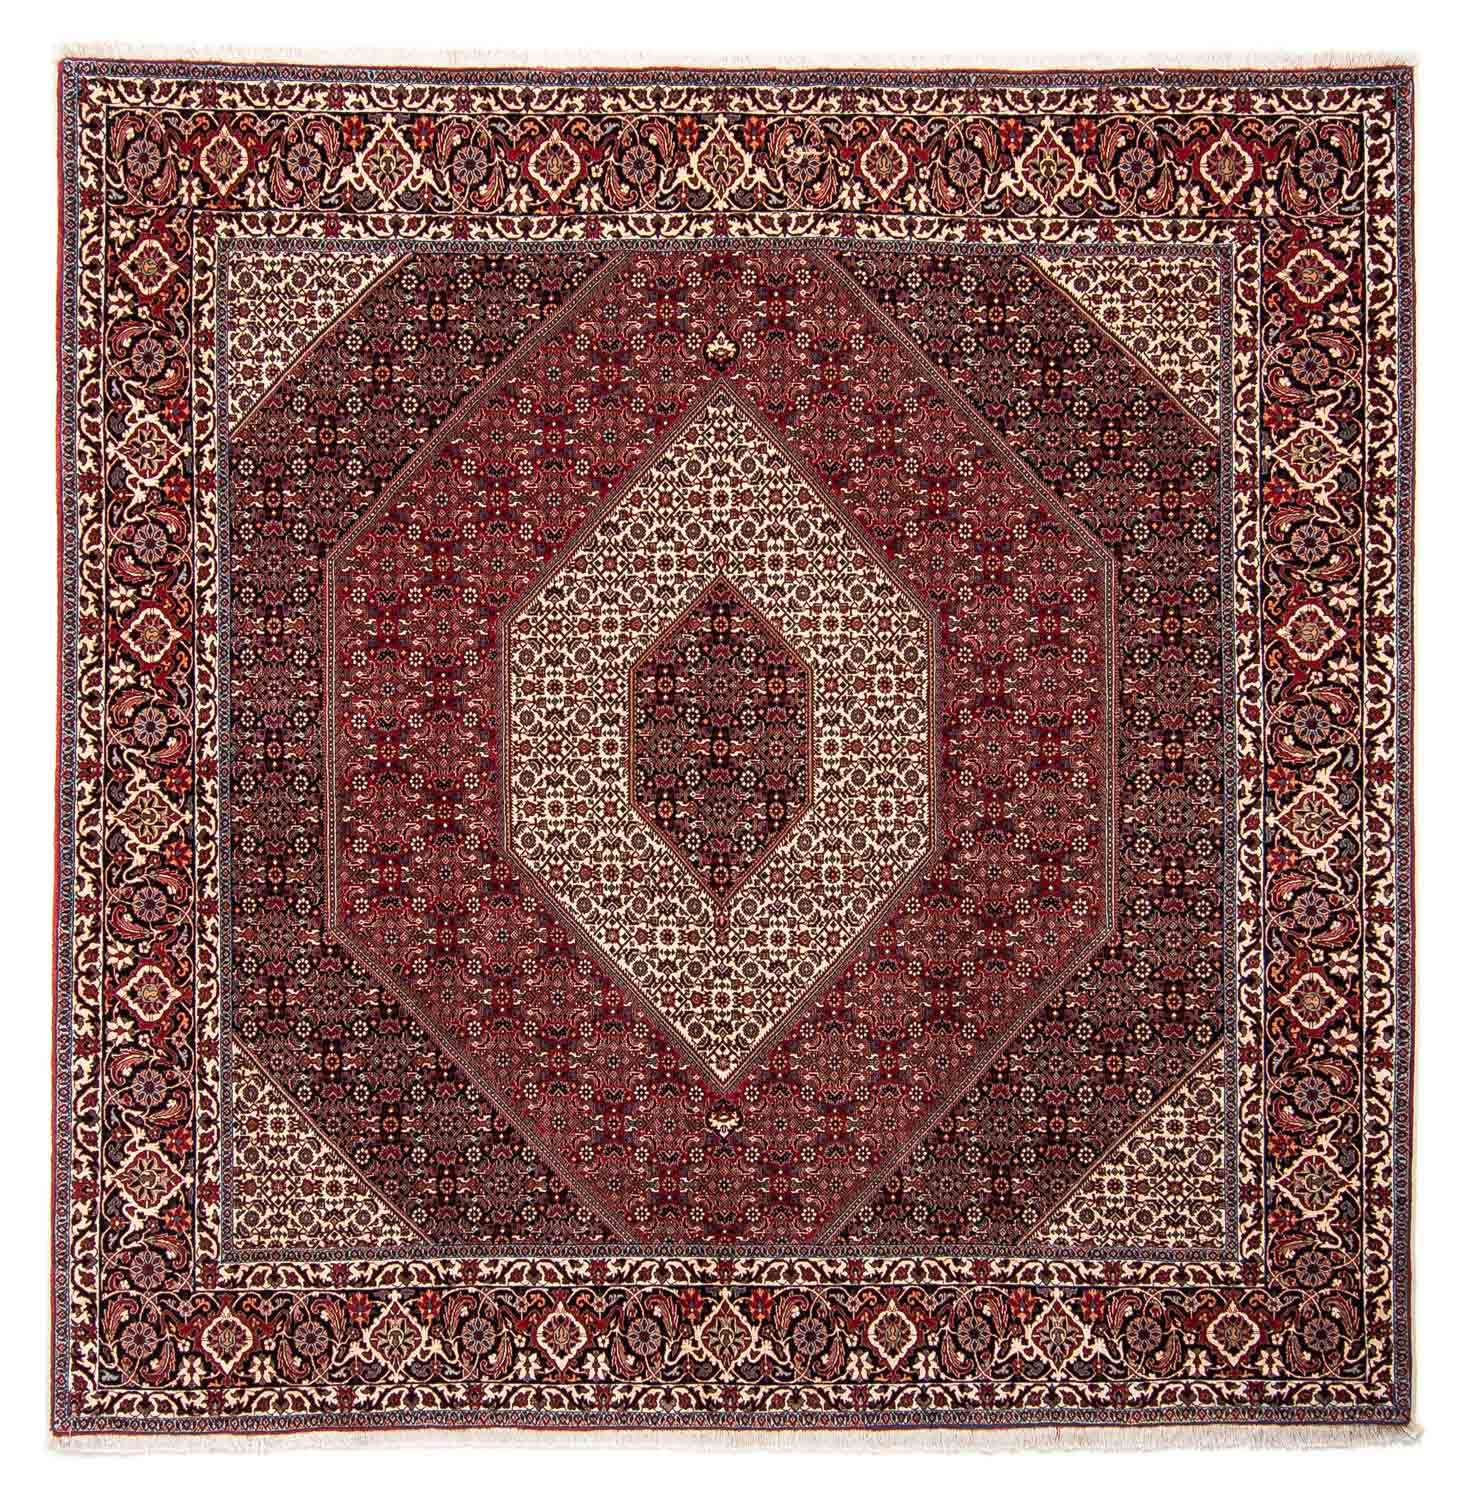 Tapis persan - Bidjar carré  - 250 x 250 cm - rouge foncé